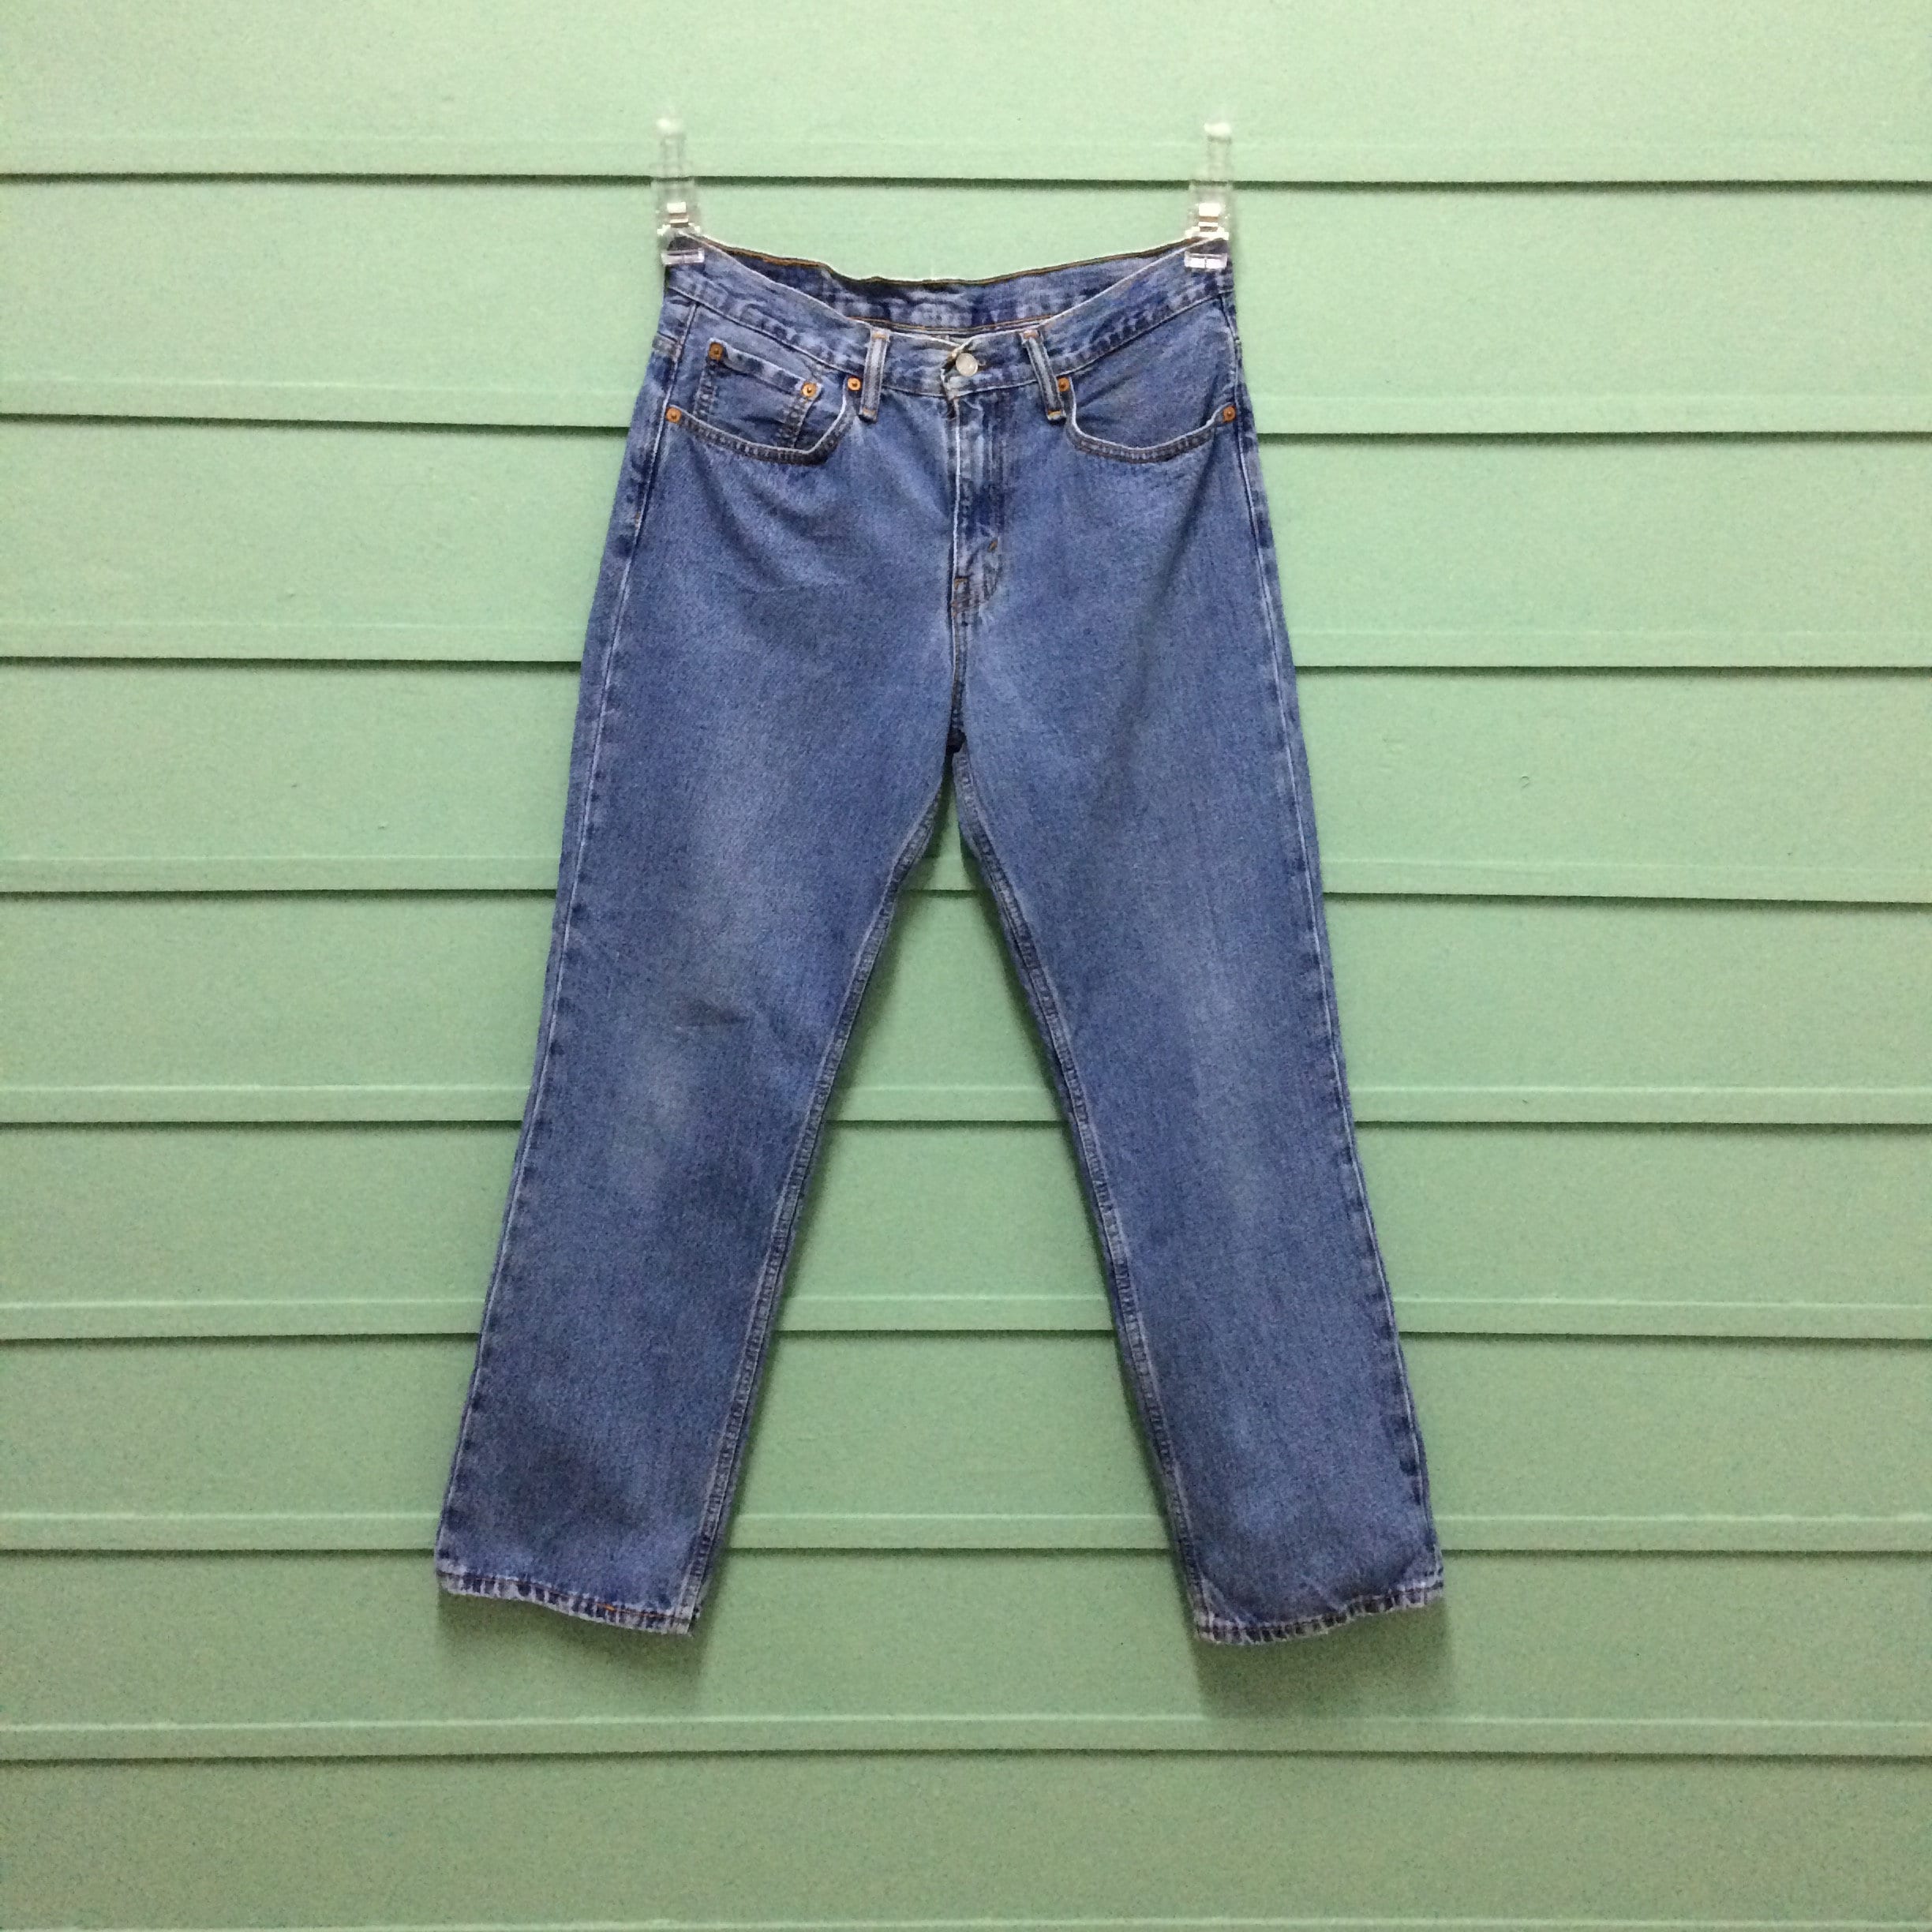 W31 L28 Vintage Distressed Levis 516 Jeans Light Wash Rigid - Etsy